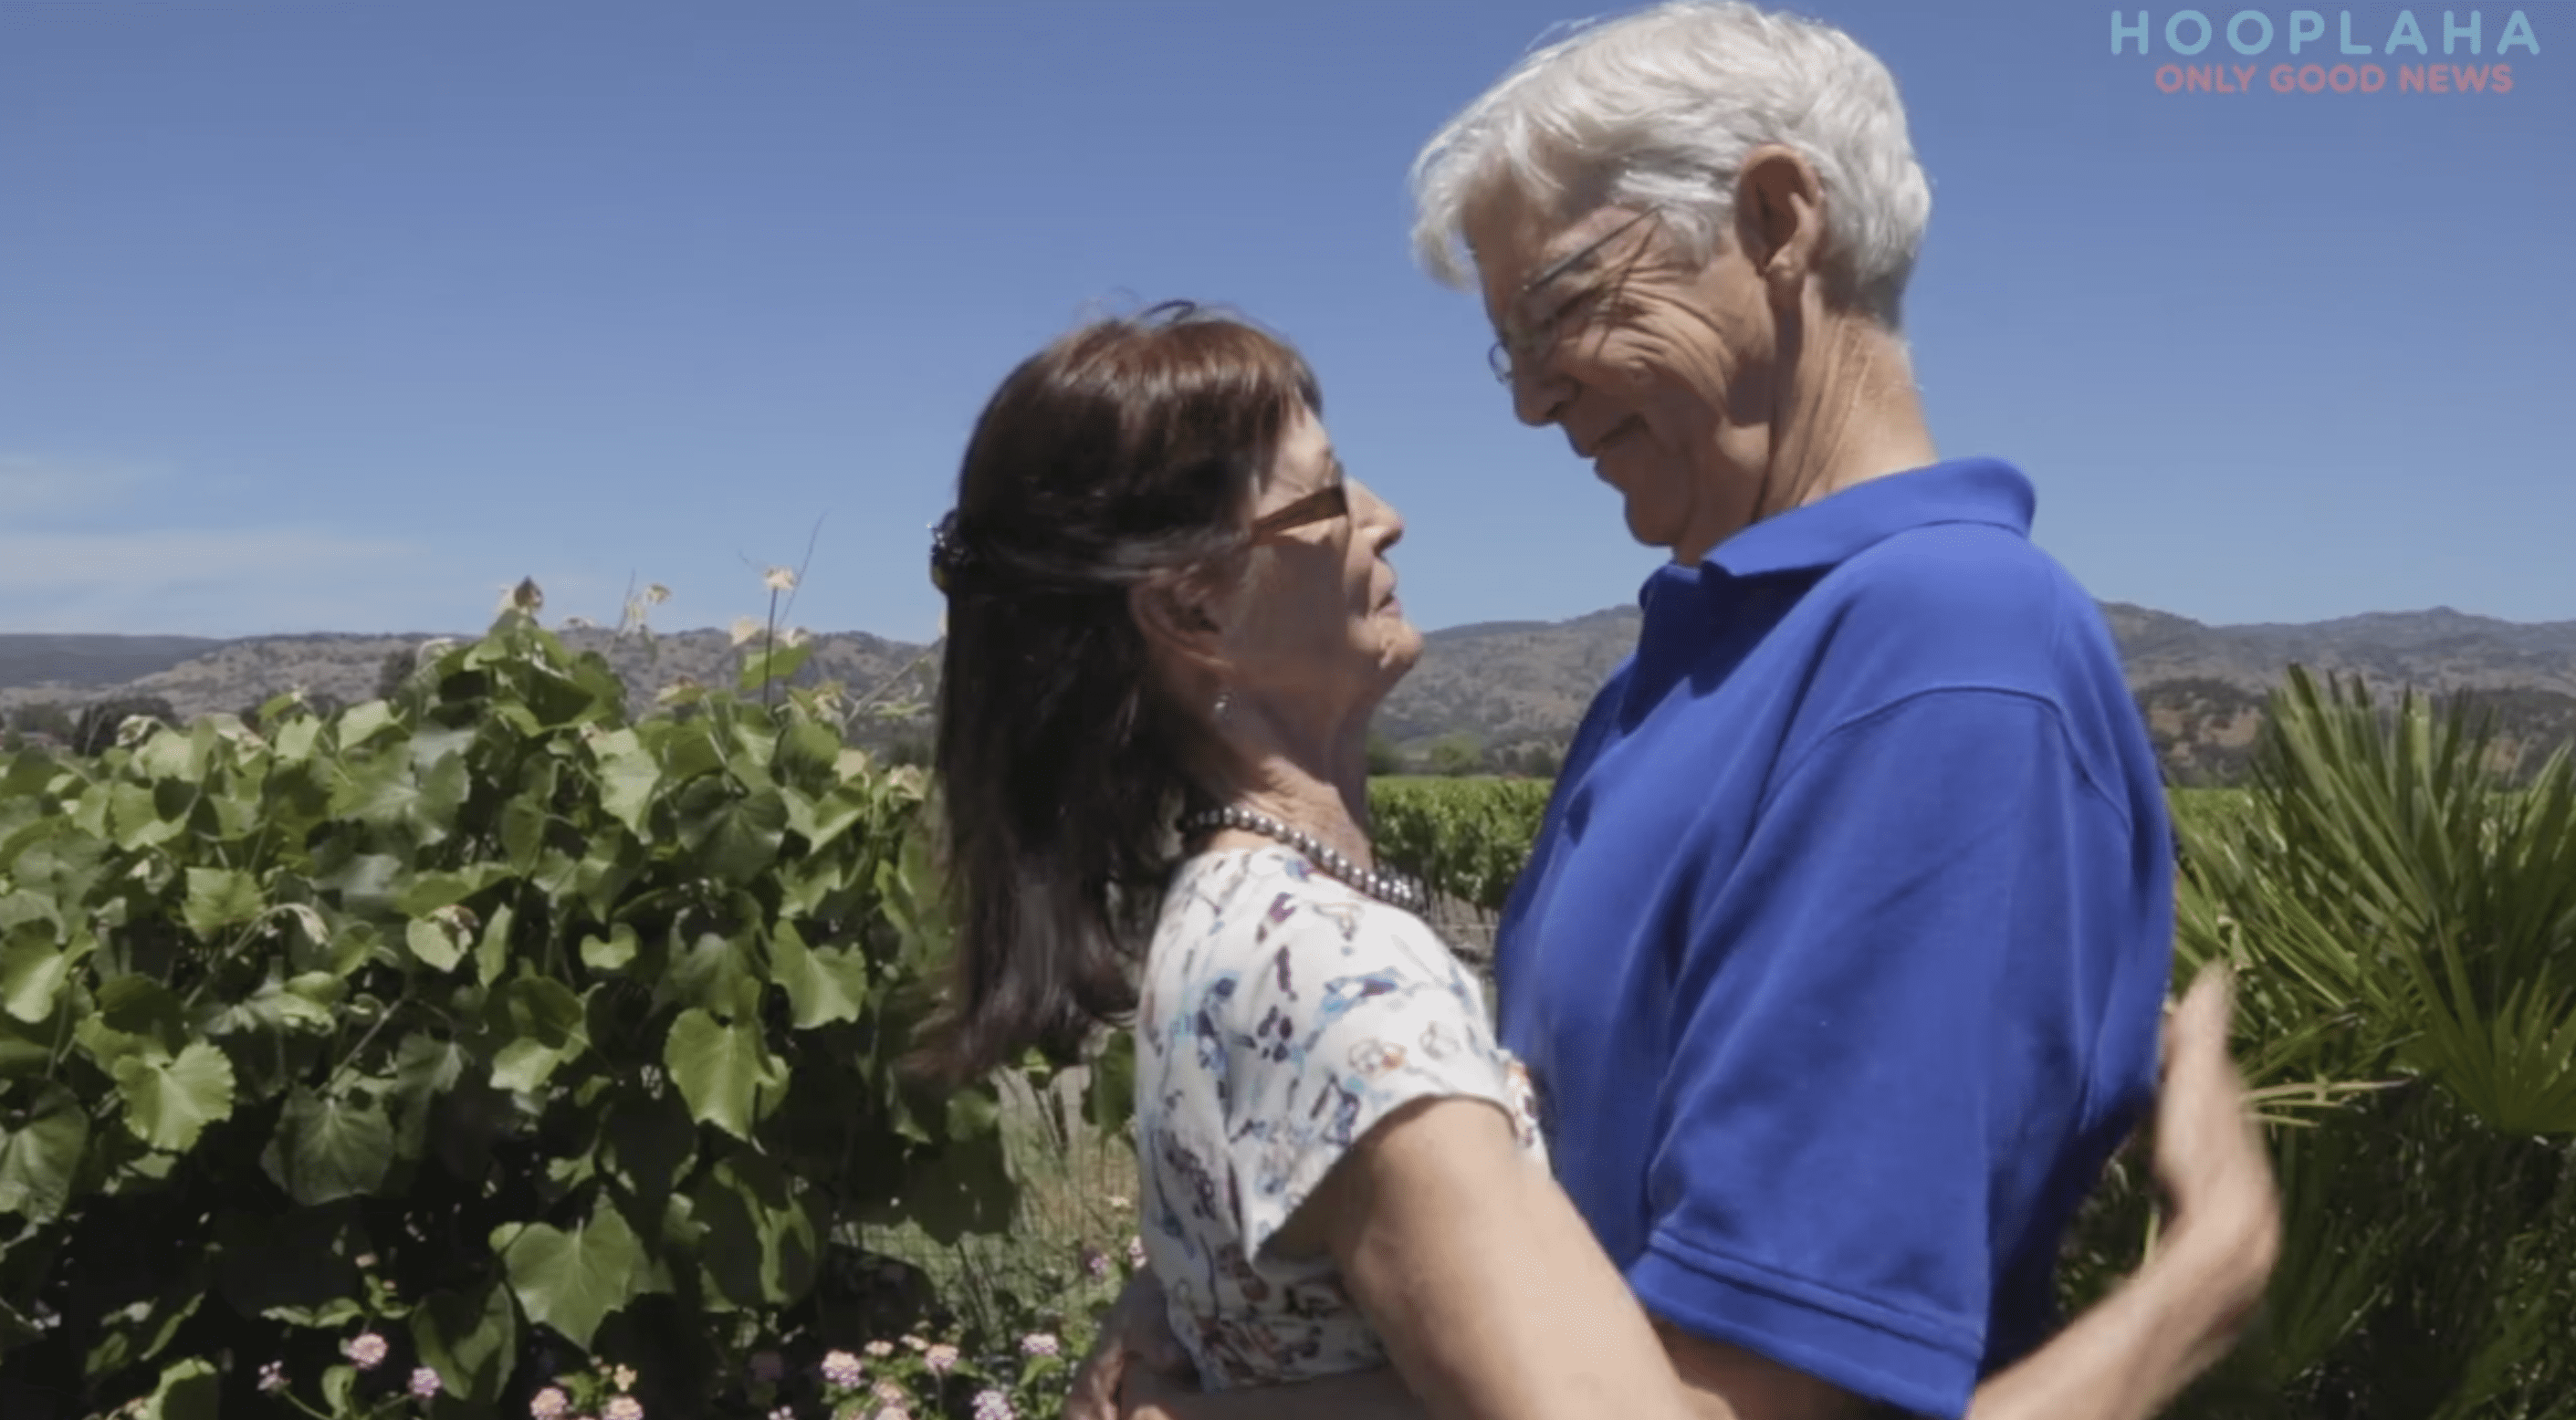 Die ehemaligen Liebhaber trafen sich nach 48 Jahren wieder und stellten fest, dass ihre Liebe noch intakt war. | Quelle: YouTube.com/OnlyGood TV